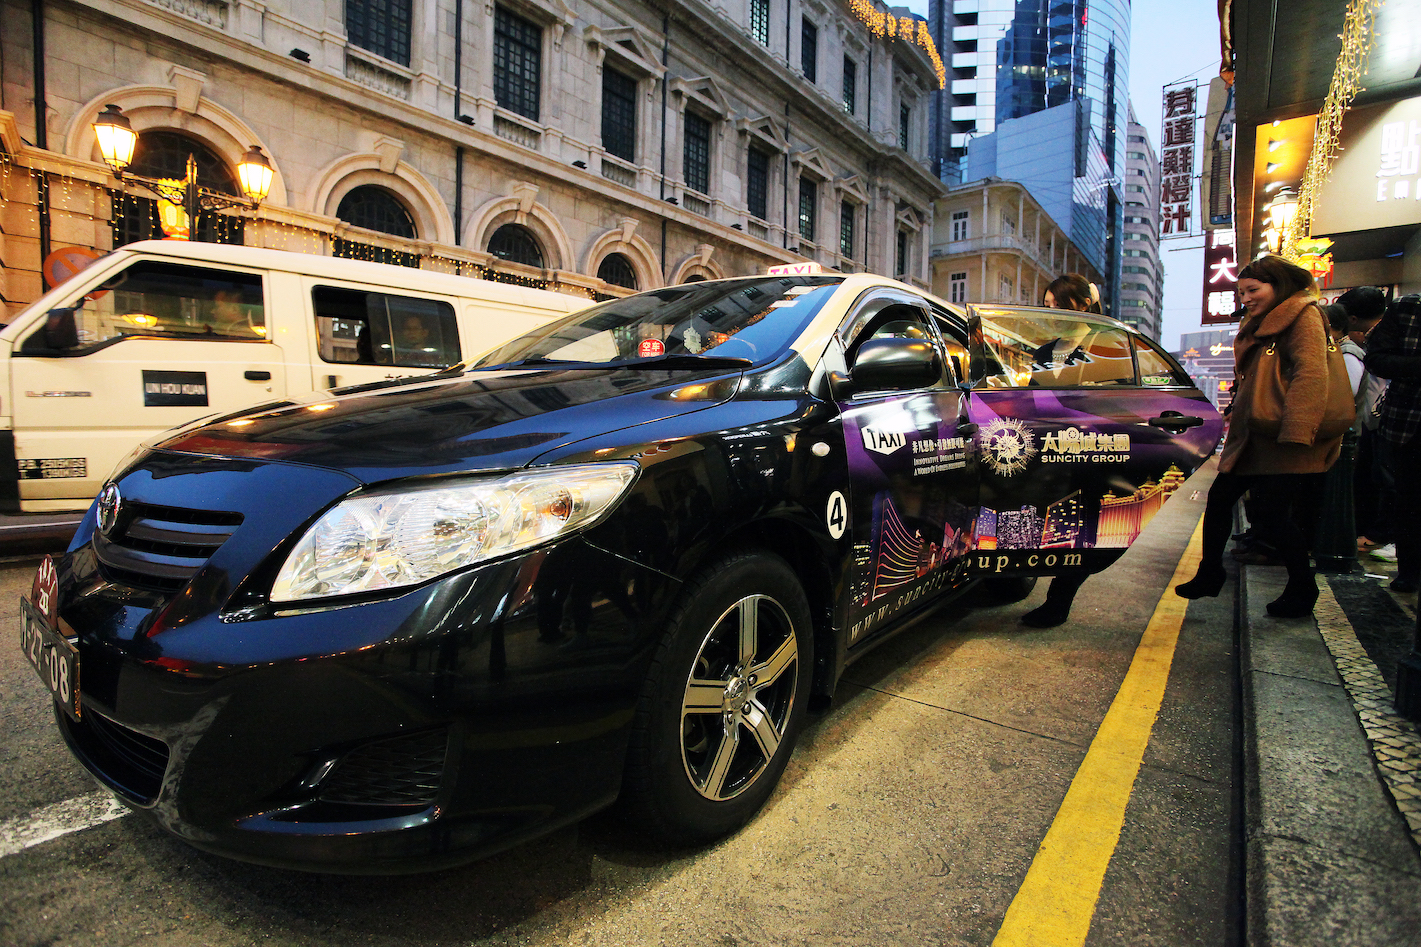 Taxistas querem formação para substituir multas